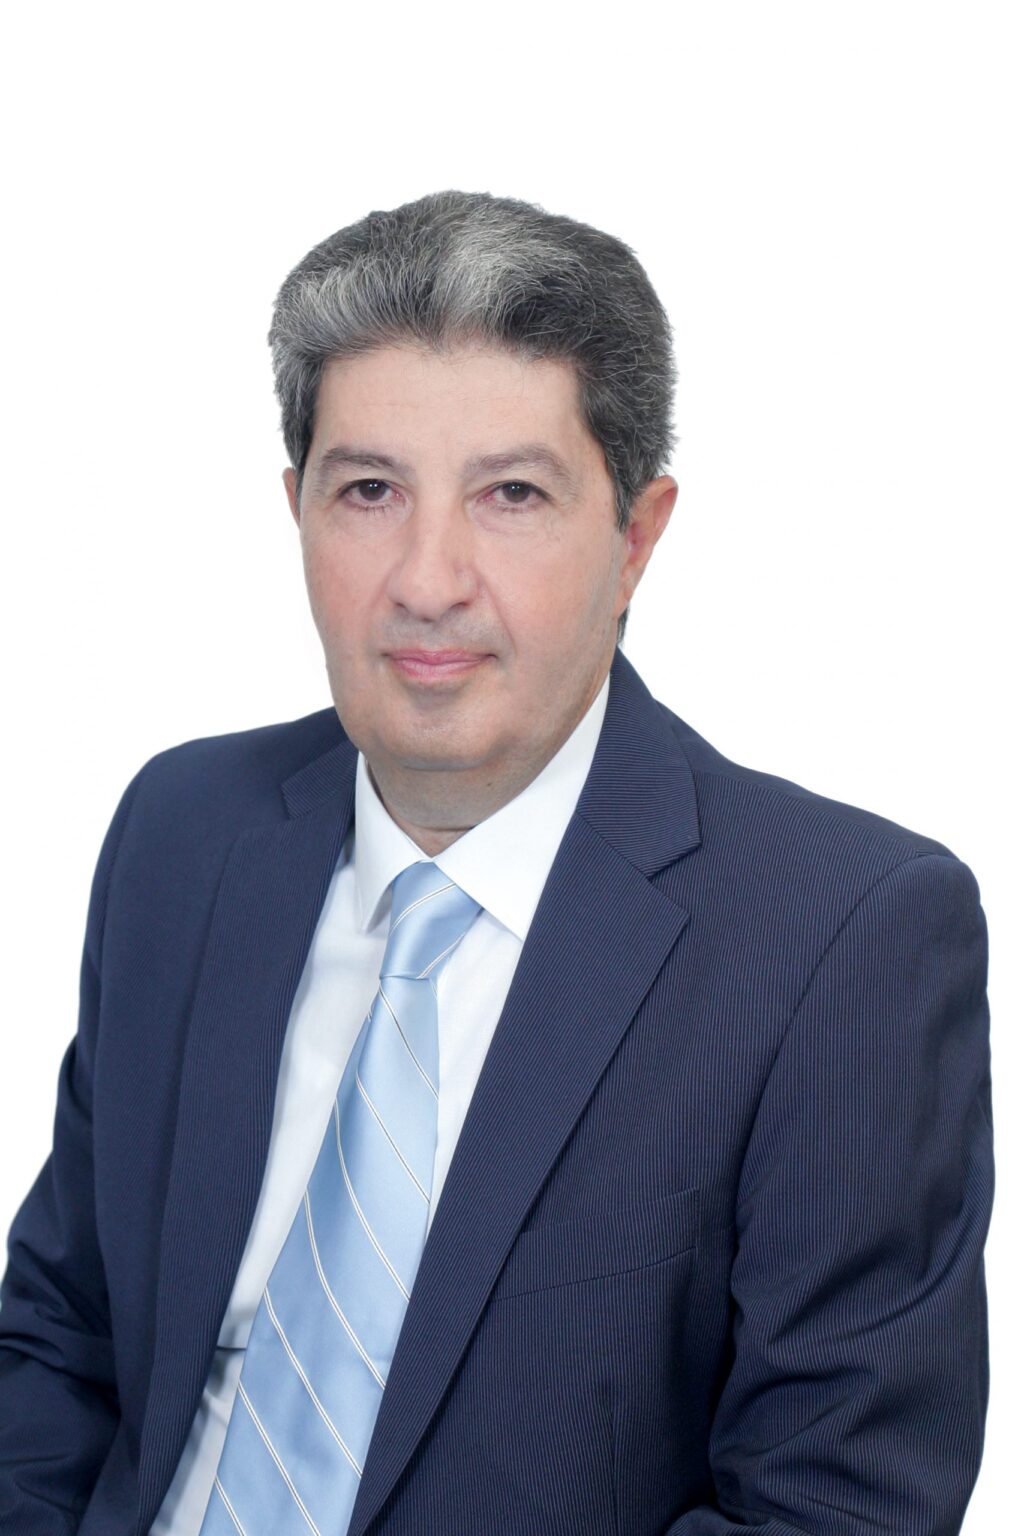 Γεώργιος Ευθύμογλου, Καθηγητής και Πρόεδρος του Τμήματος Ψηφιακών Συστημάτων